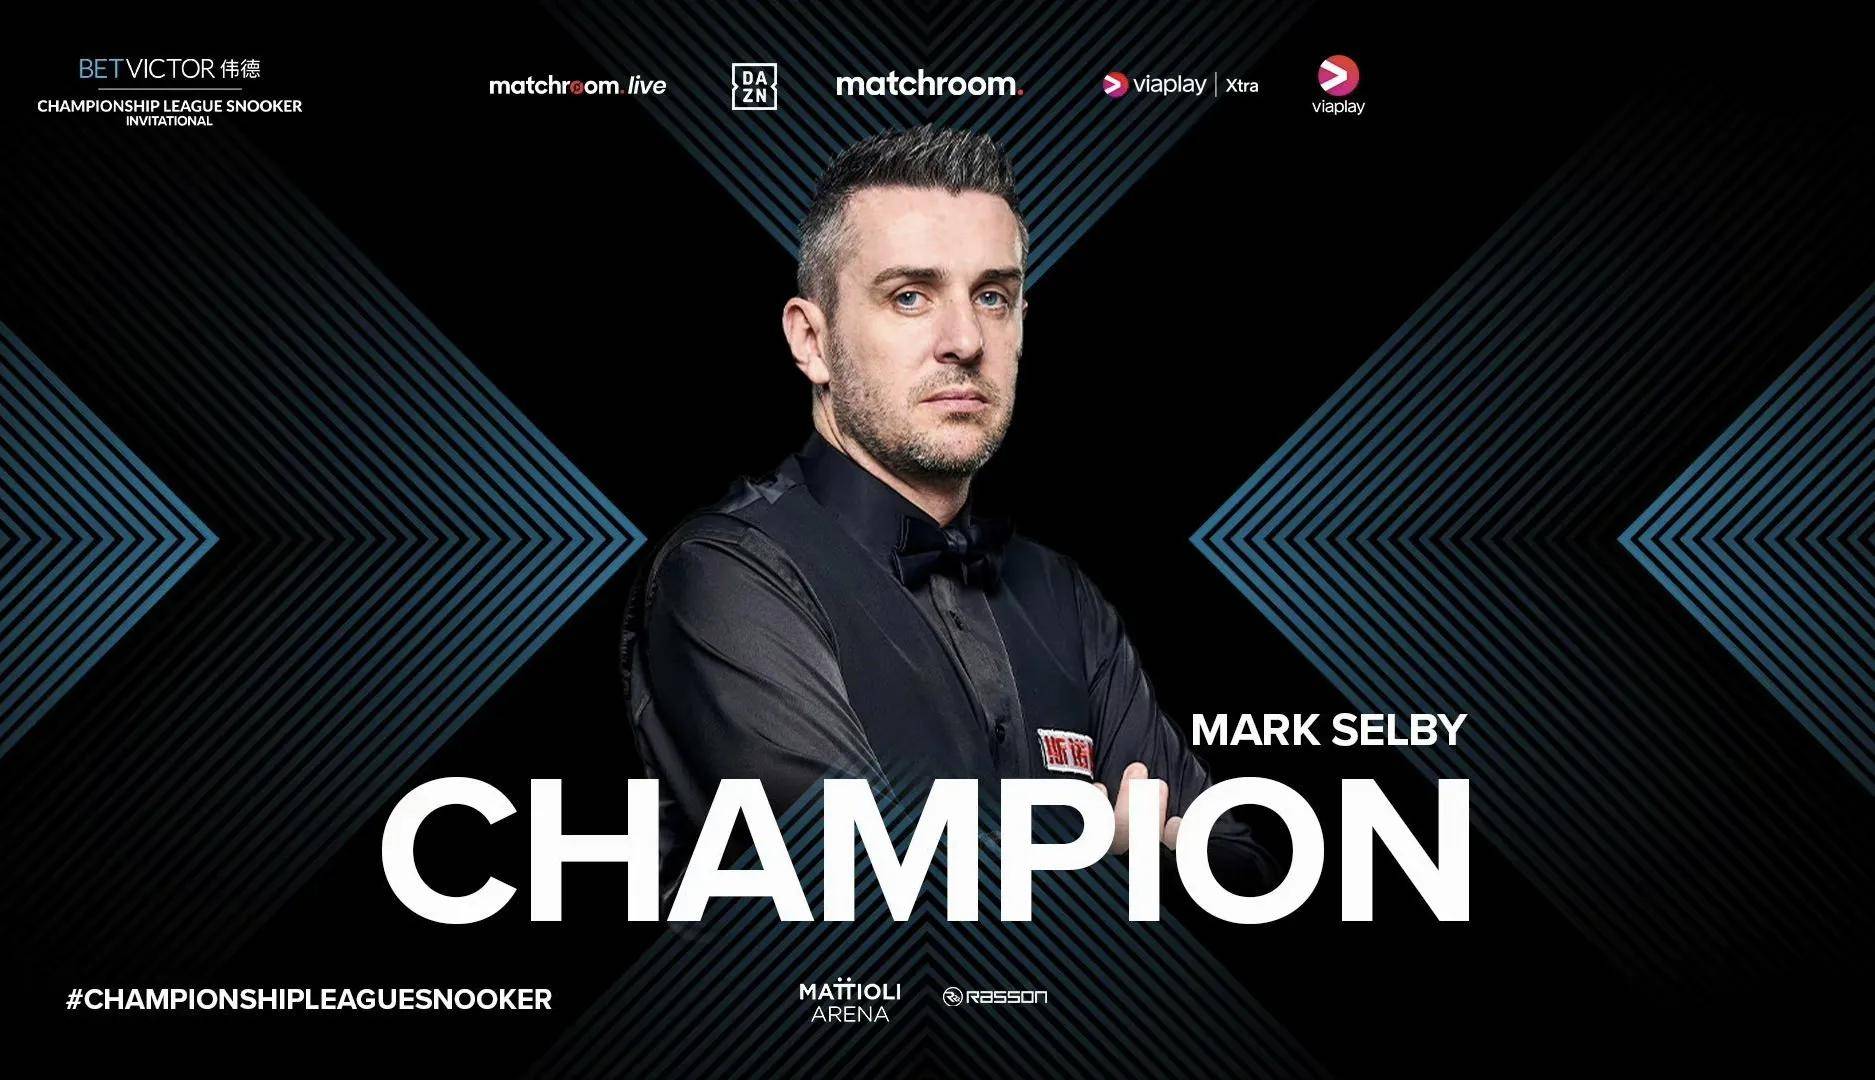 马克·塞尔比,在13个月前的世界斯诺克wst赛夺得生涯第22个排名赛冠军